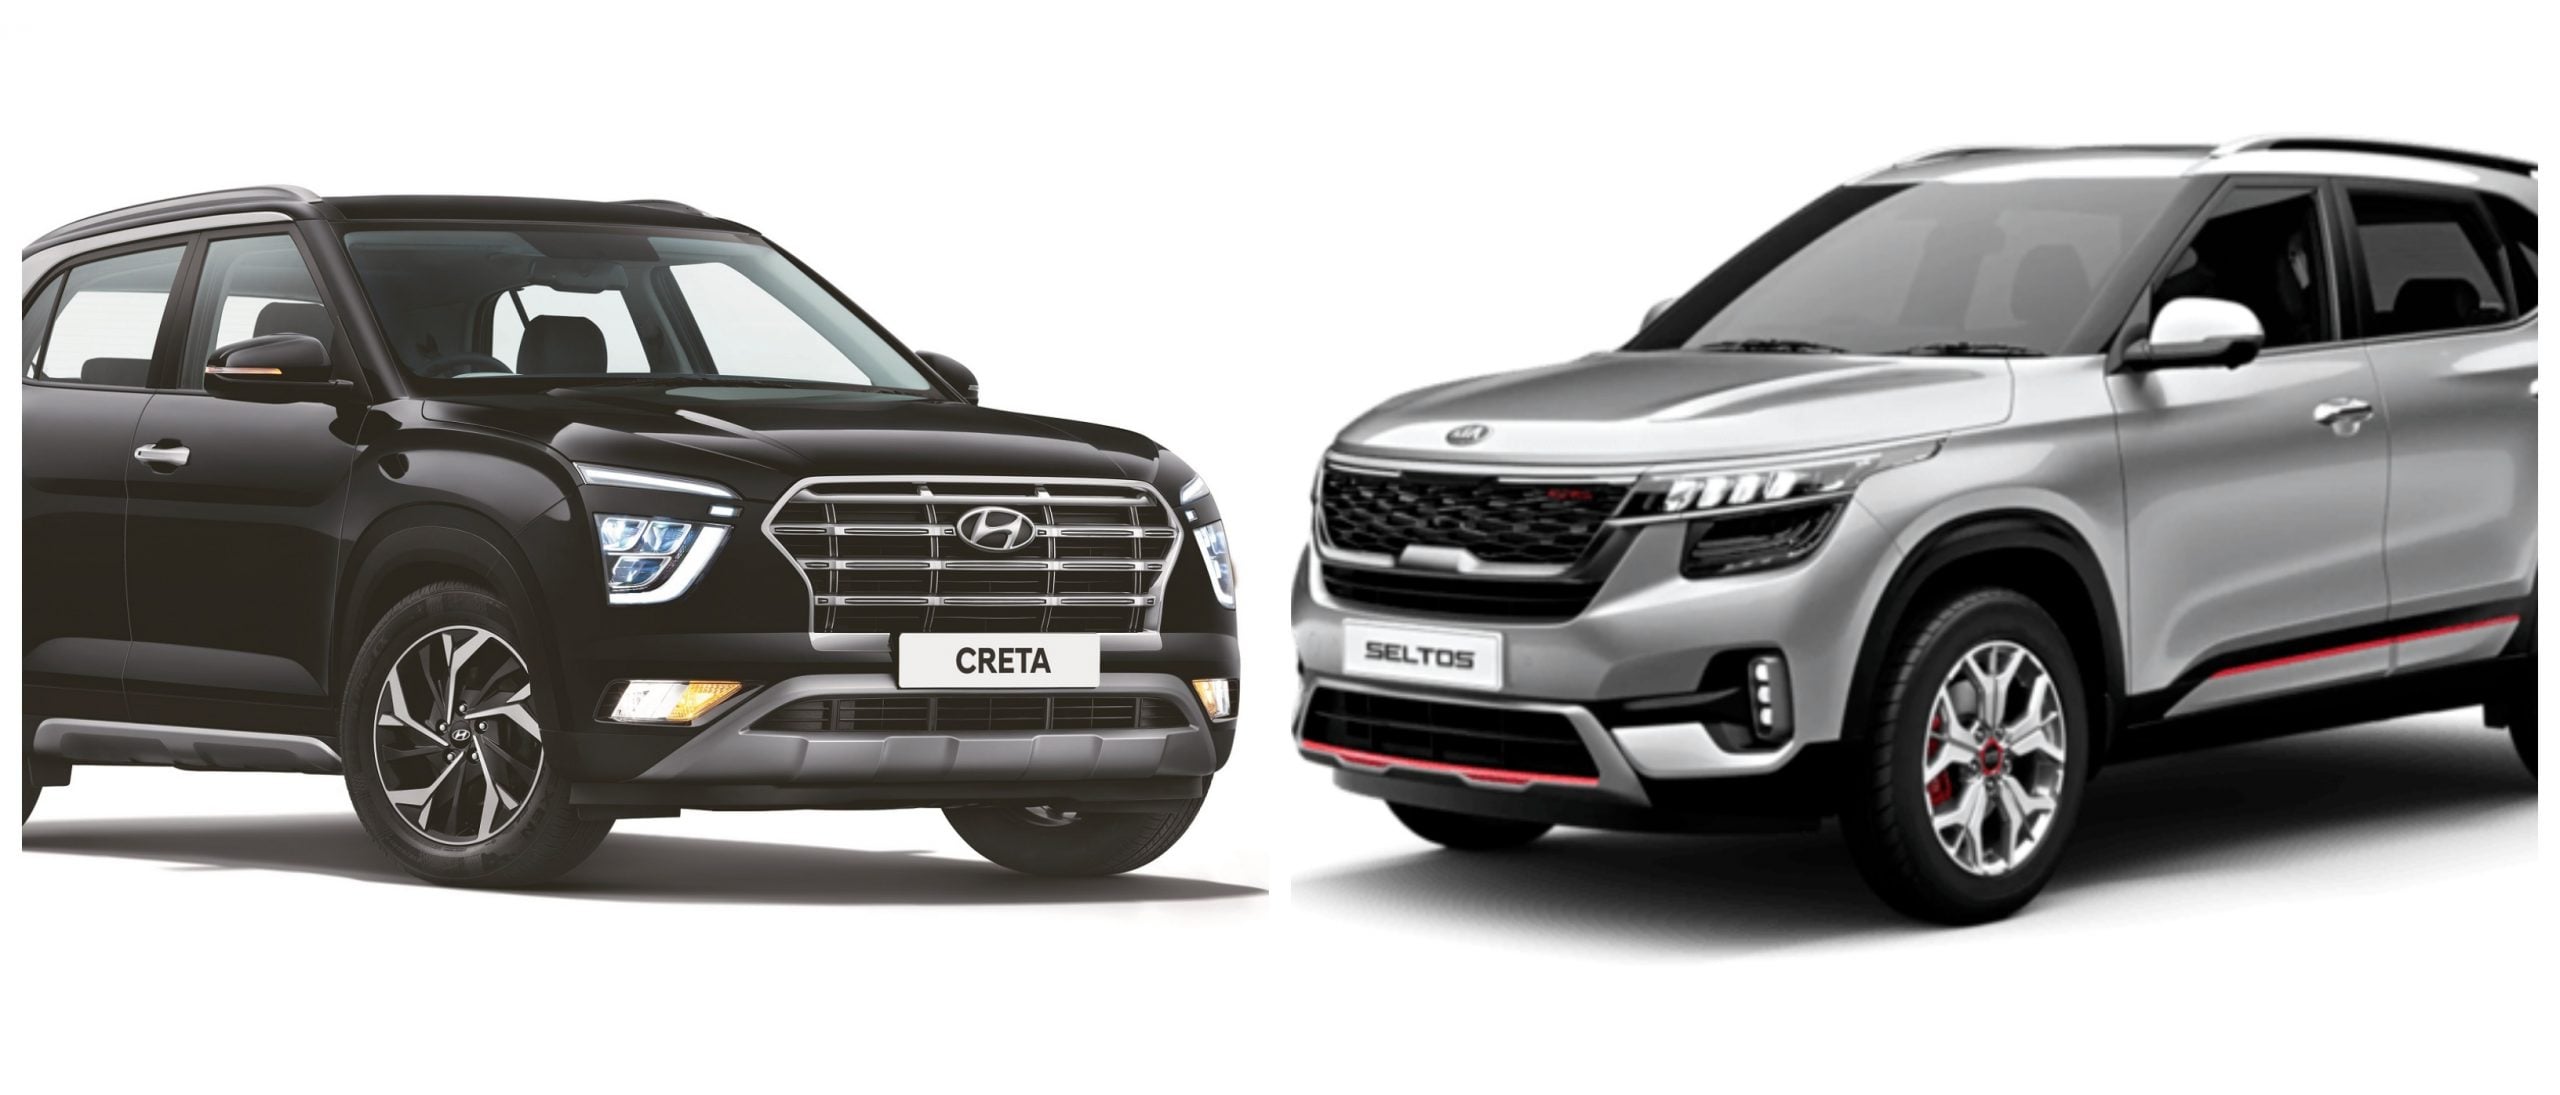 2020 Hyundai Creta Vs Kia Seltos Price Features Mileage Engine